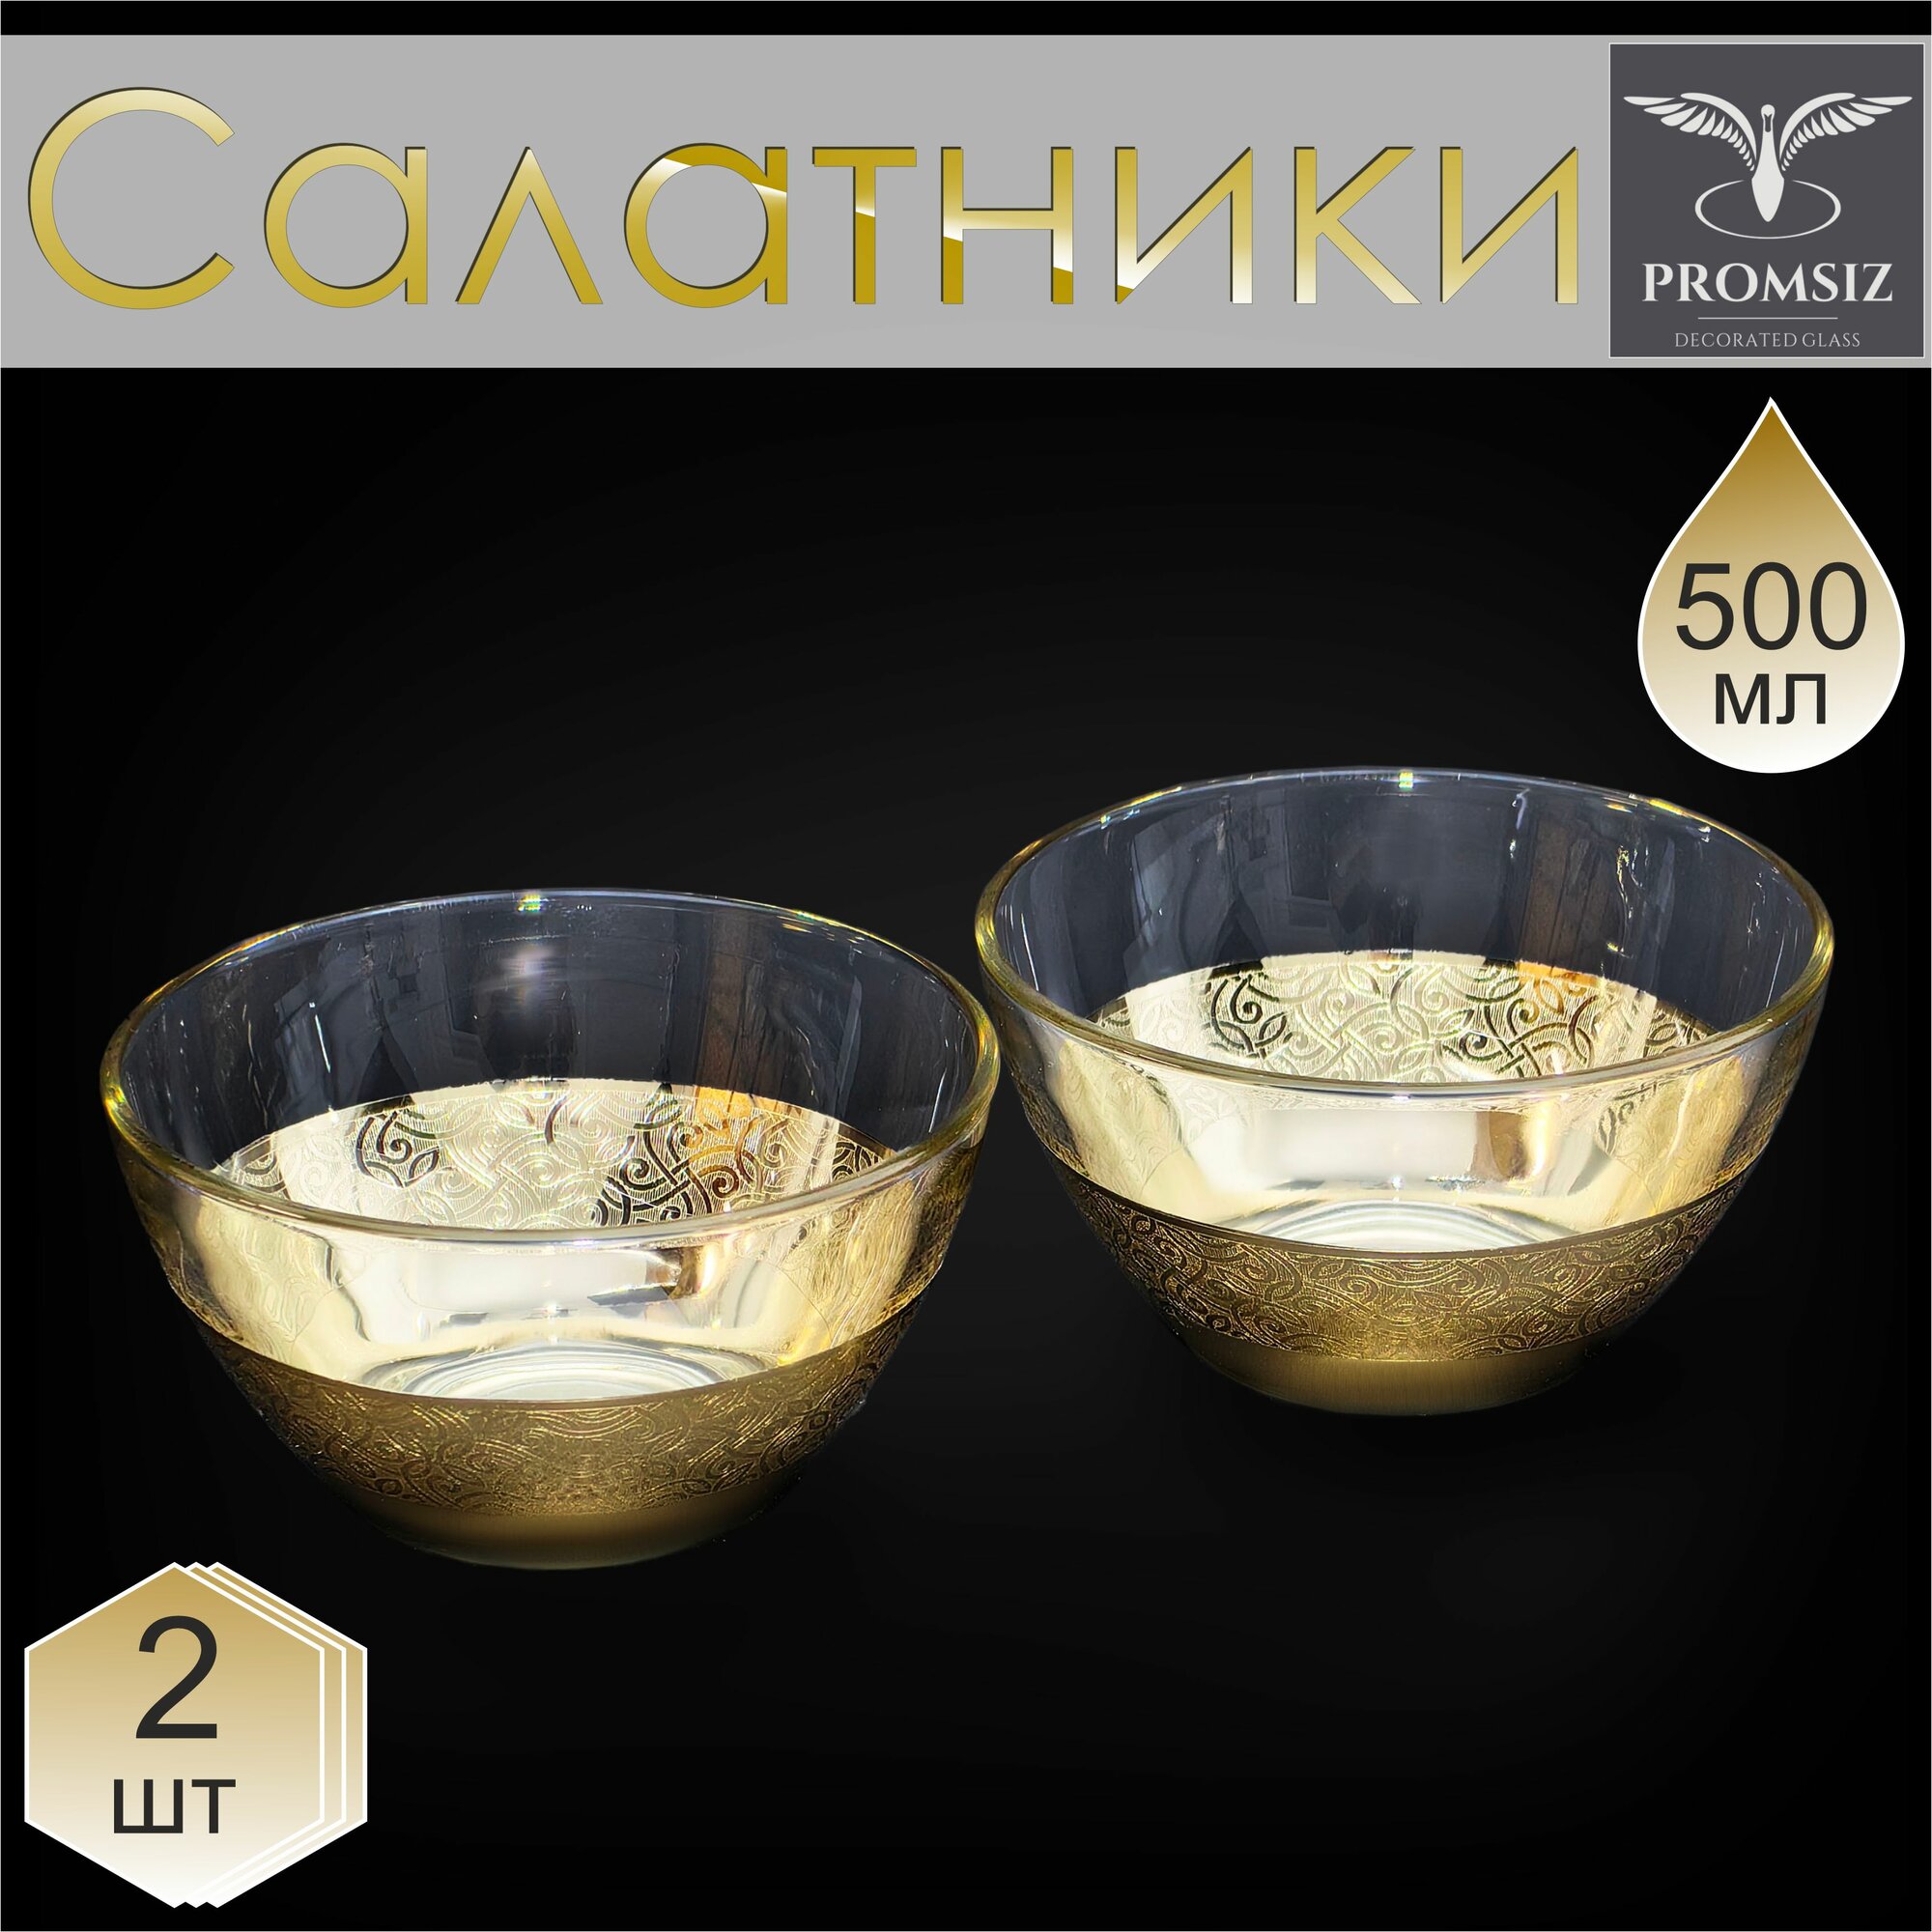 Набор стеклянных салатников с алмазной гравировкой PROMSIZ колизей / Подарочный набор посуды в подарок / Салатница стекло / Посуда для сервировки и подачи / 500 мл, 2 шт.